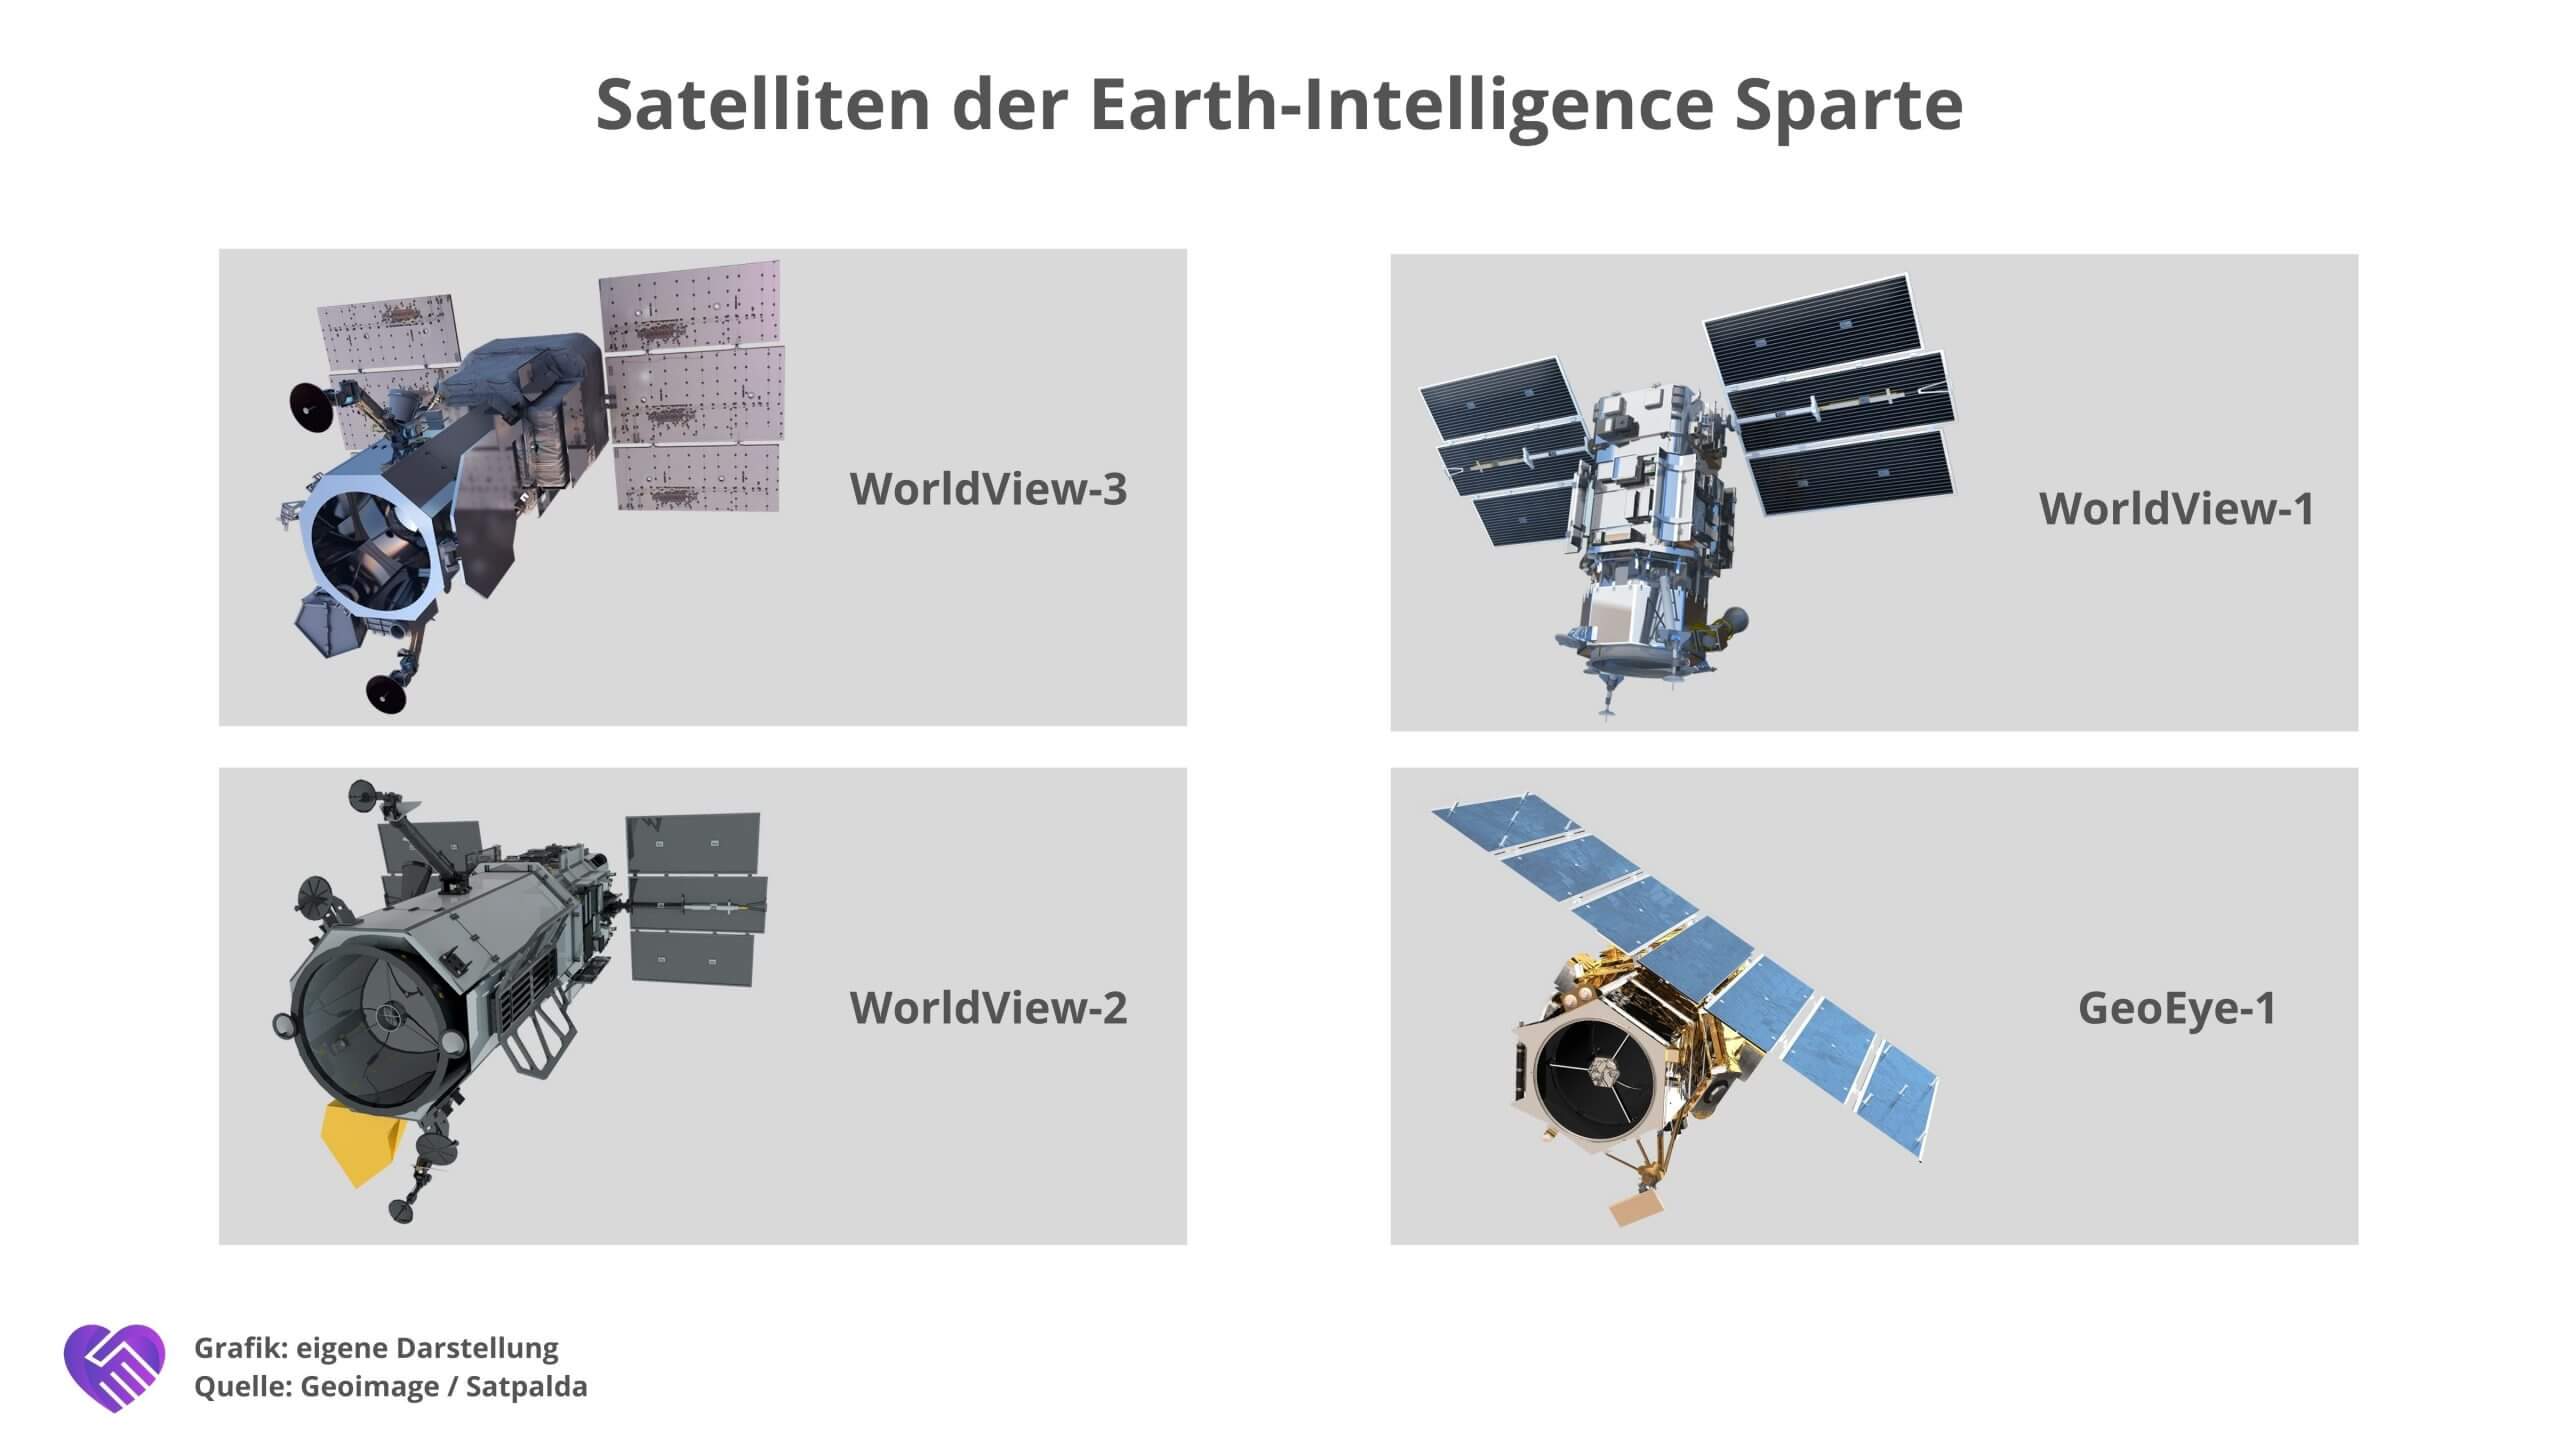 3D-Modelle der vier Earth-Intelligence Satelliten von Maxar